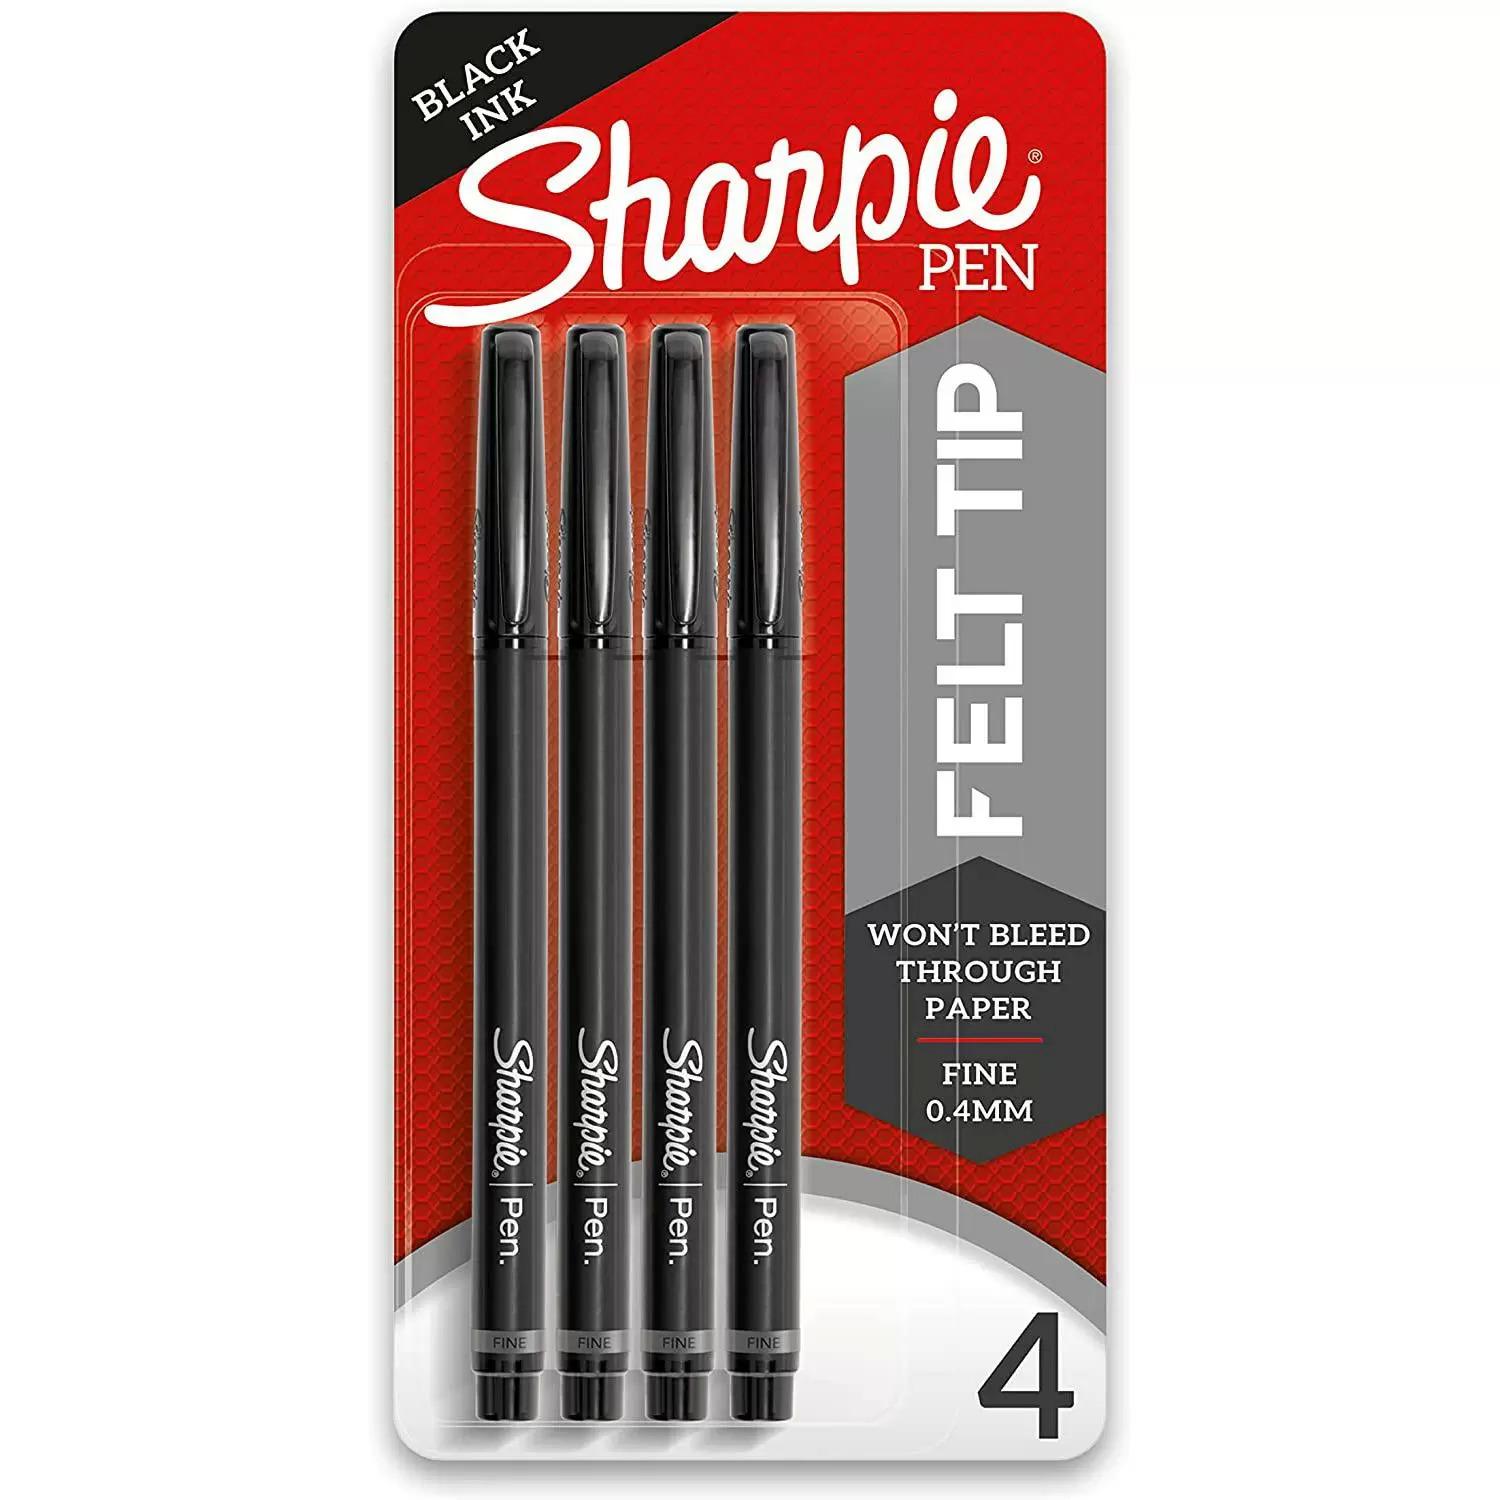 4 Sharpie Fine Point 0.4 mm Felt Tip Pens for $4.24